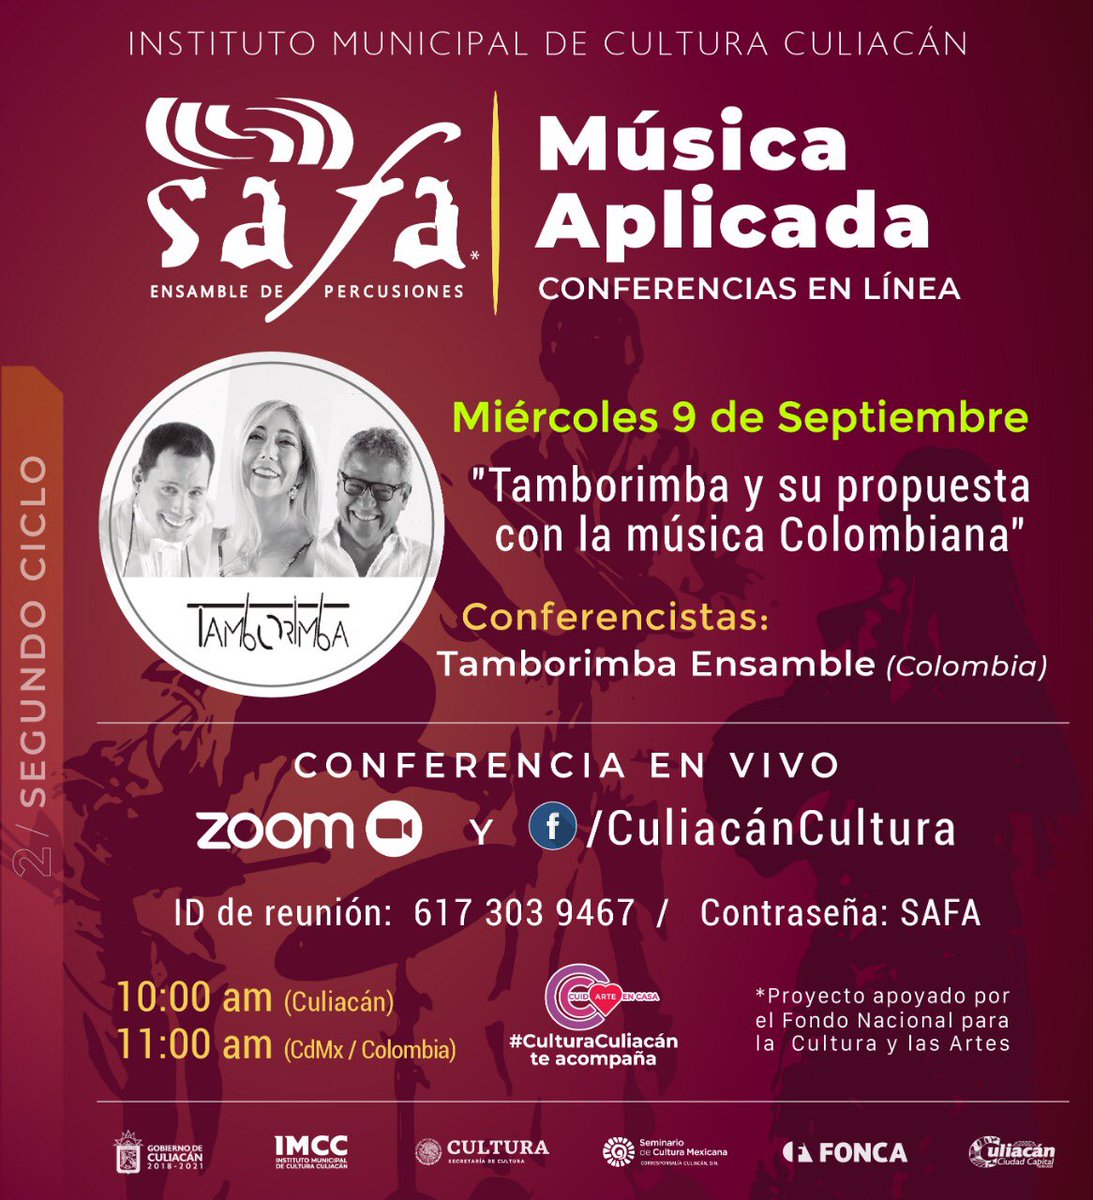 @tamborimba y su propuesta con la música Colombiana miércoles 9/9/20 info en el Banner. Los esperamos @FEPECEPANAMA @TakNarapercussi @DifusionESM @MusicaINBA @FomentoMusical @ConservatorioMc @famunicach @ContempoMxmusik @MusicAmericas @MusicosCDMX @CMMASorg @esayescuela @FONCAMX